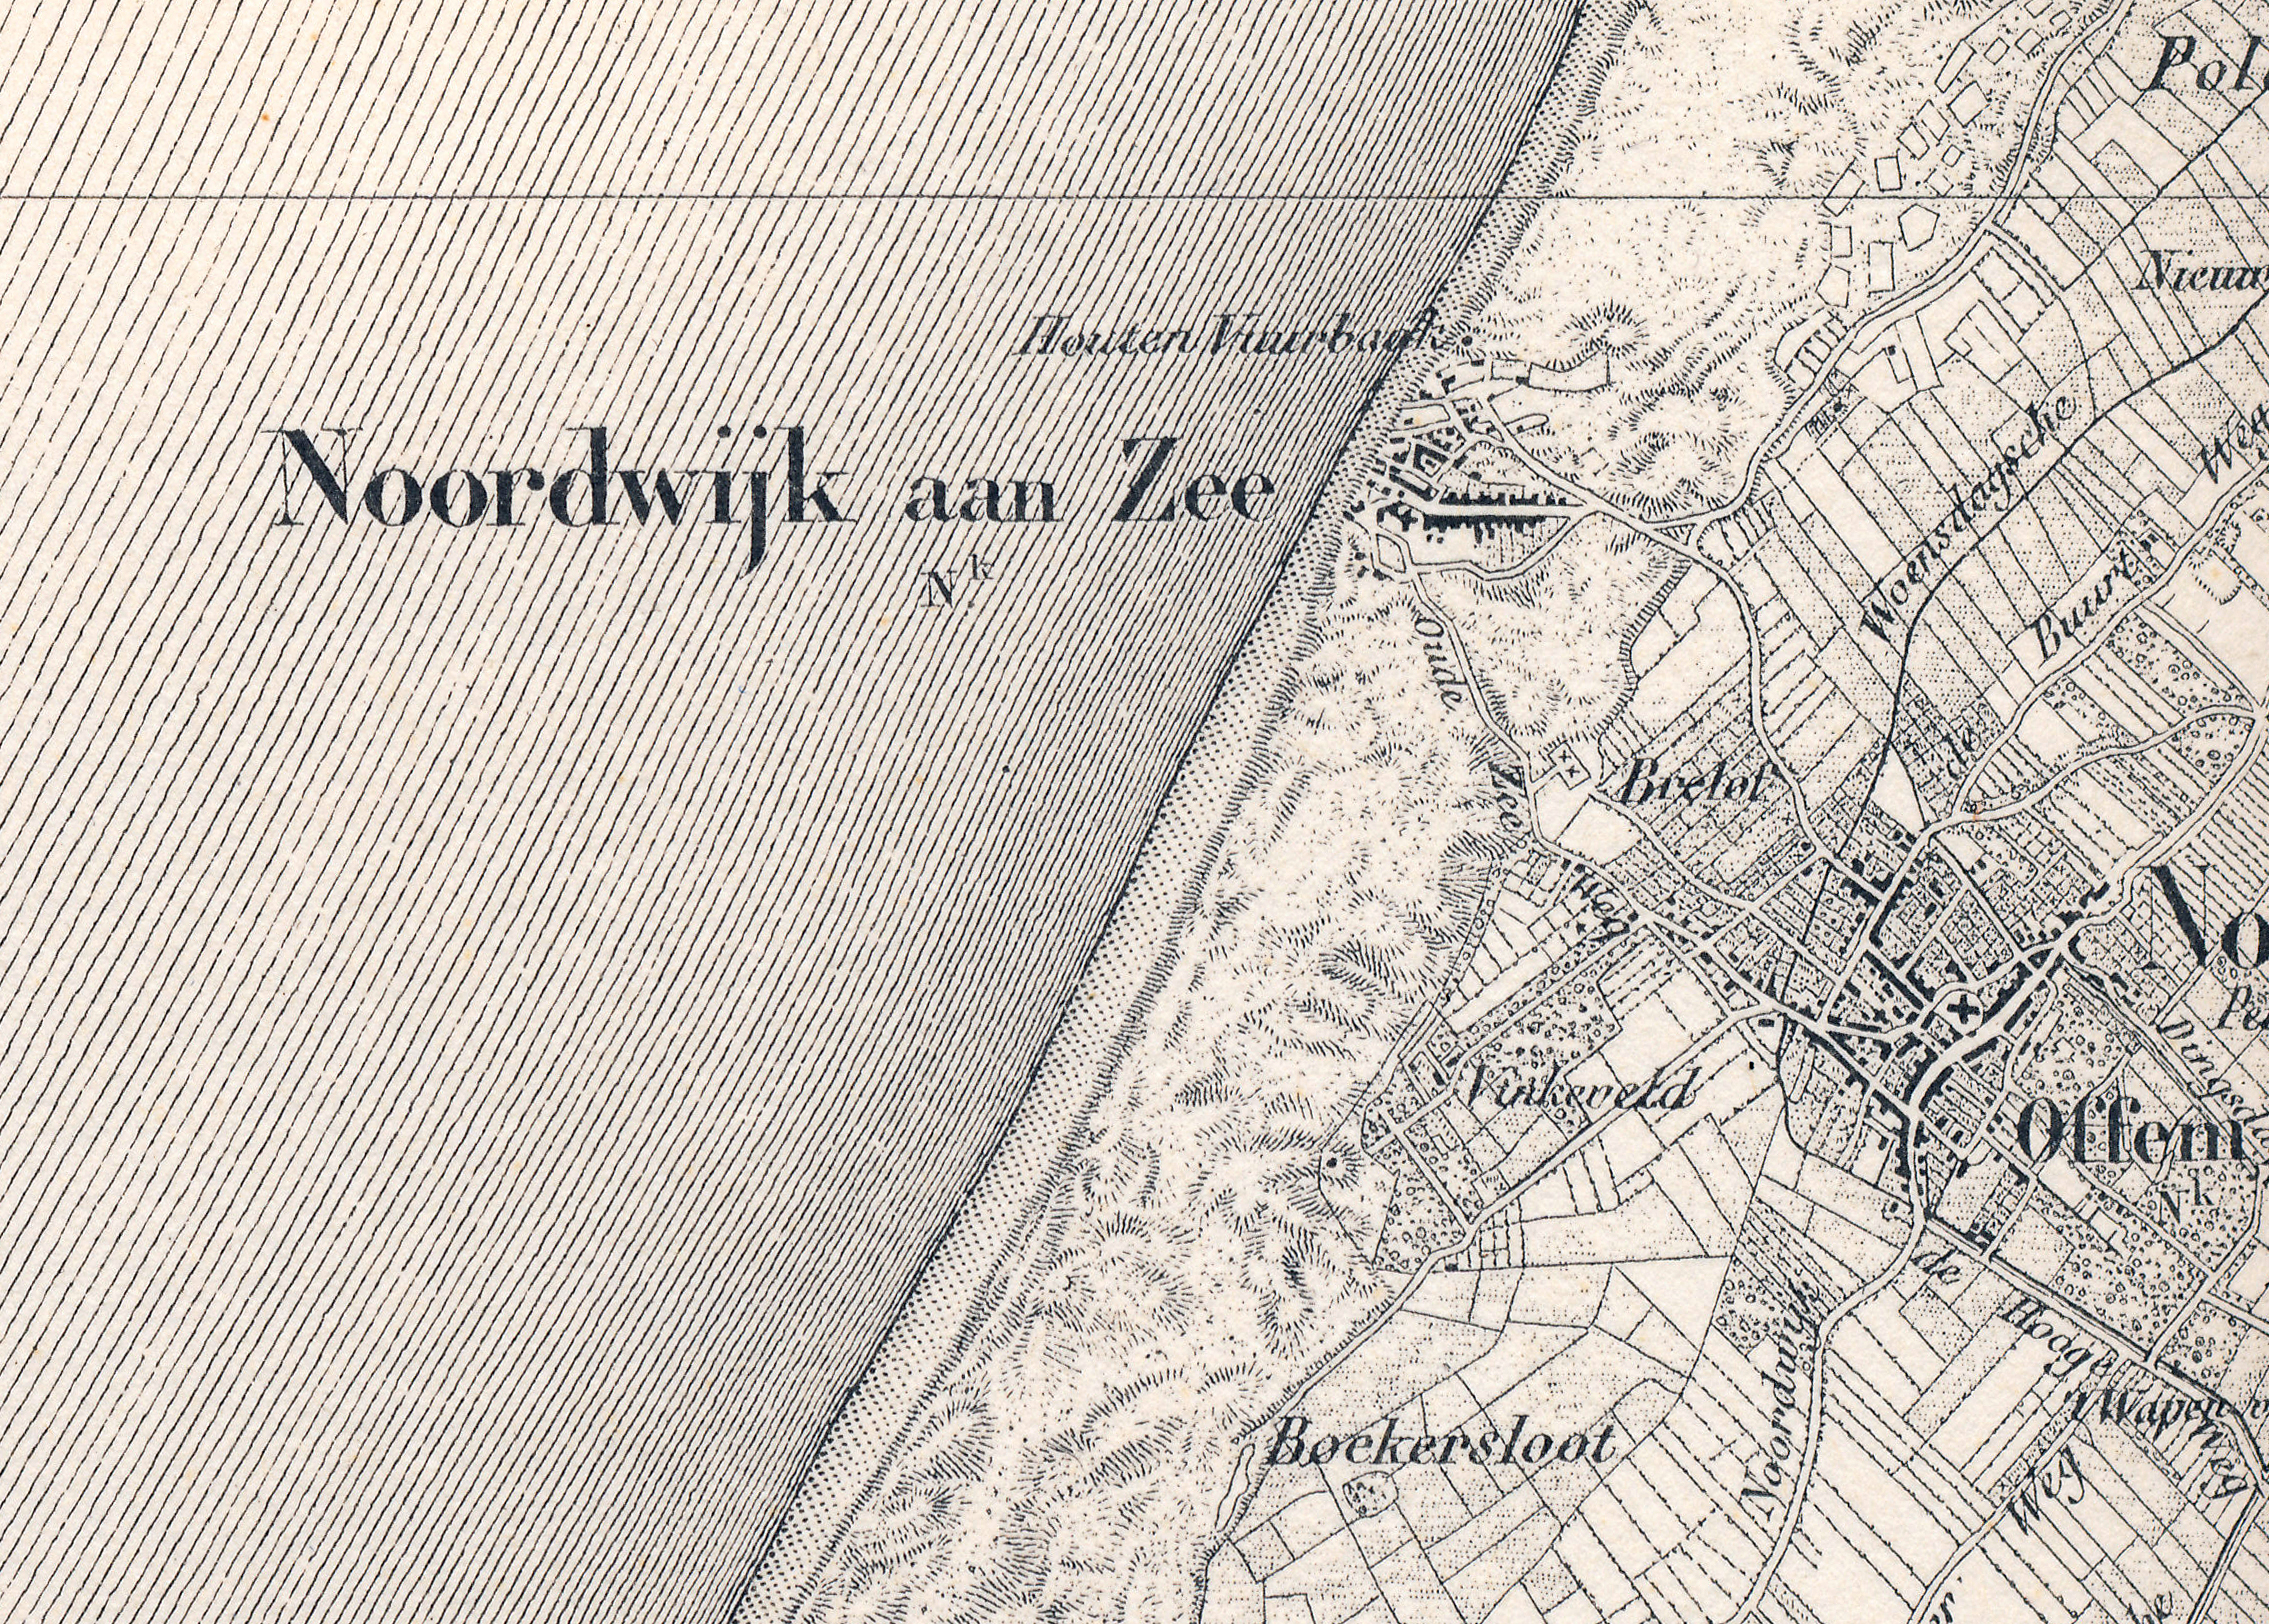 Noordwijk aan Zee 1864 (verkend tussen 1850 en 1862) militaire kaart van Nederland